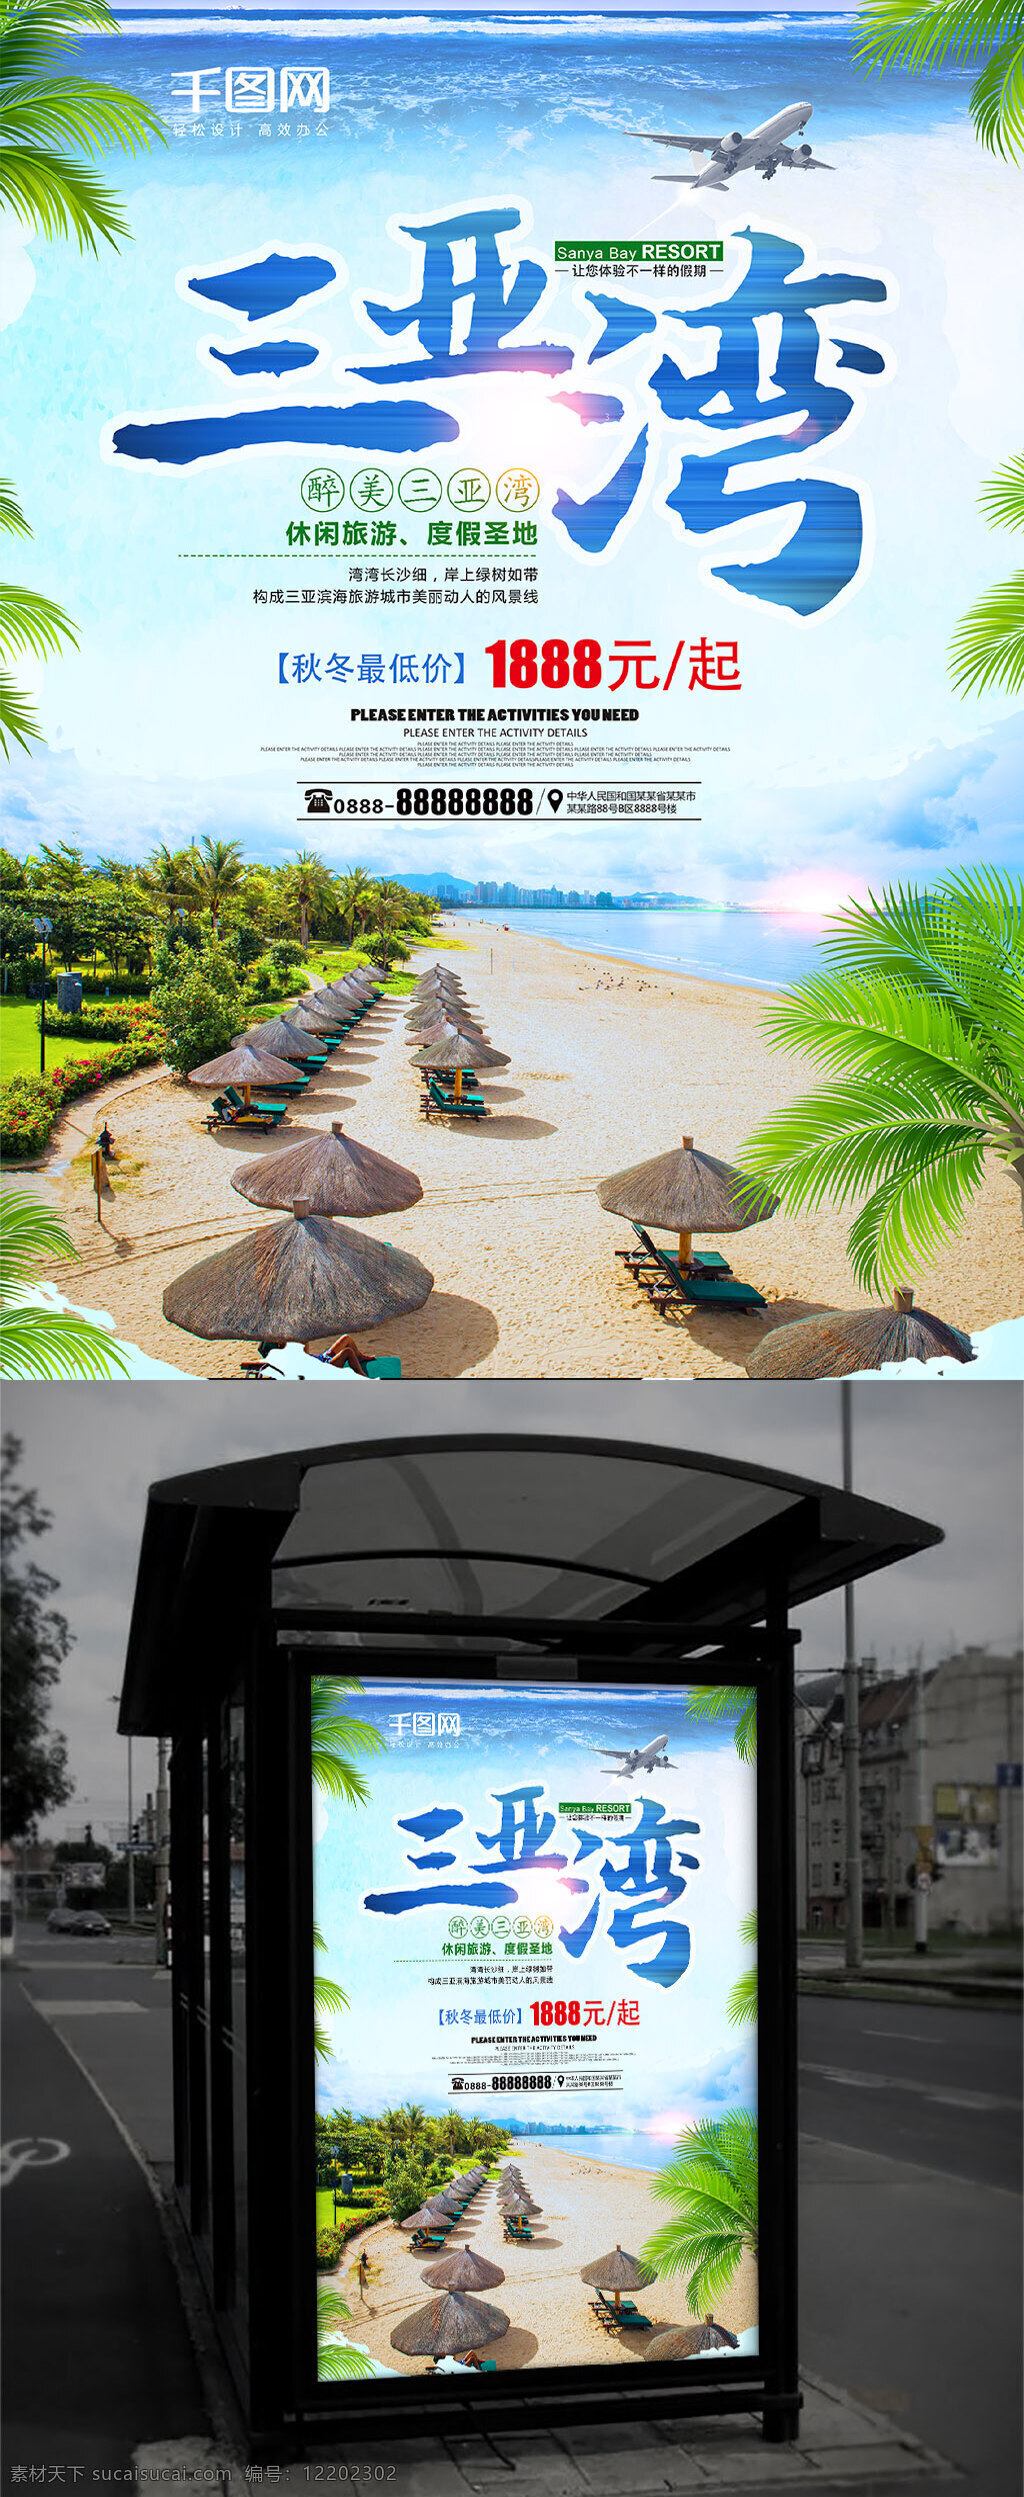 剪影 三亚湾 旅游 海报 三亚 海湾 大海 蓝天 椰树 沙滩 自然景观 三亚湾旅游 三亚湾度假 三亚湾海报 旅游海报 旅游展板